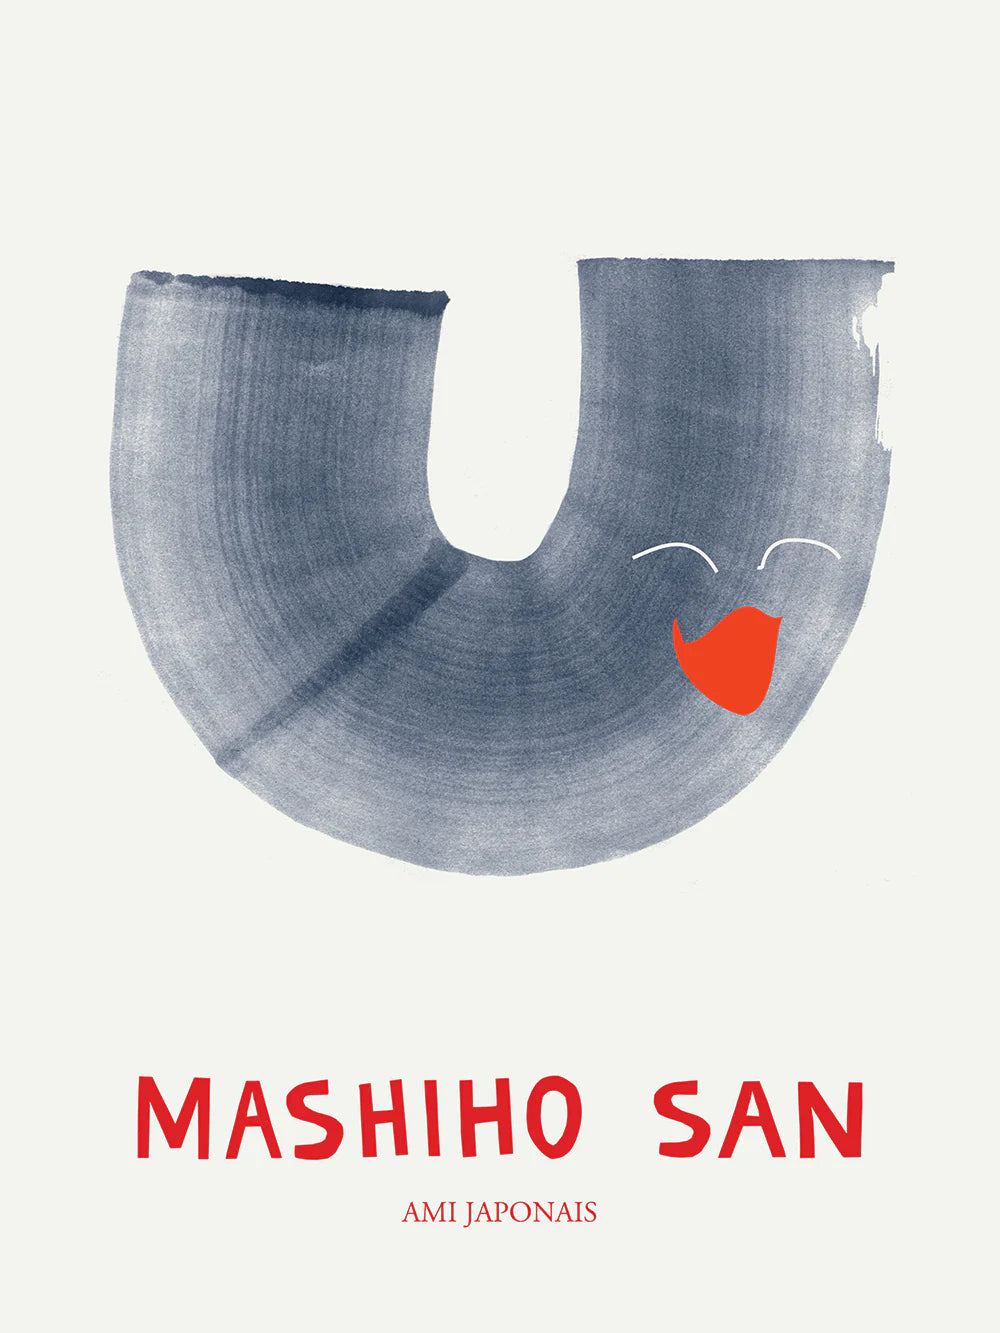 MASHIHO SAN Print by ATWTP/Mado